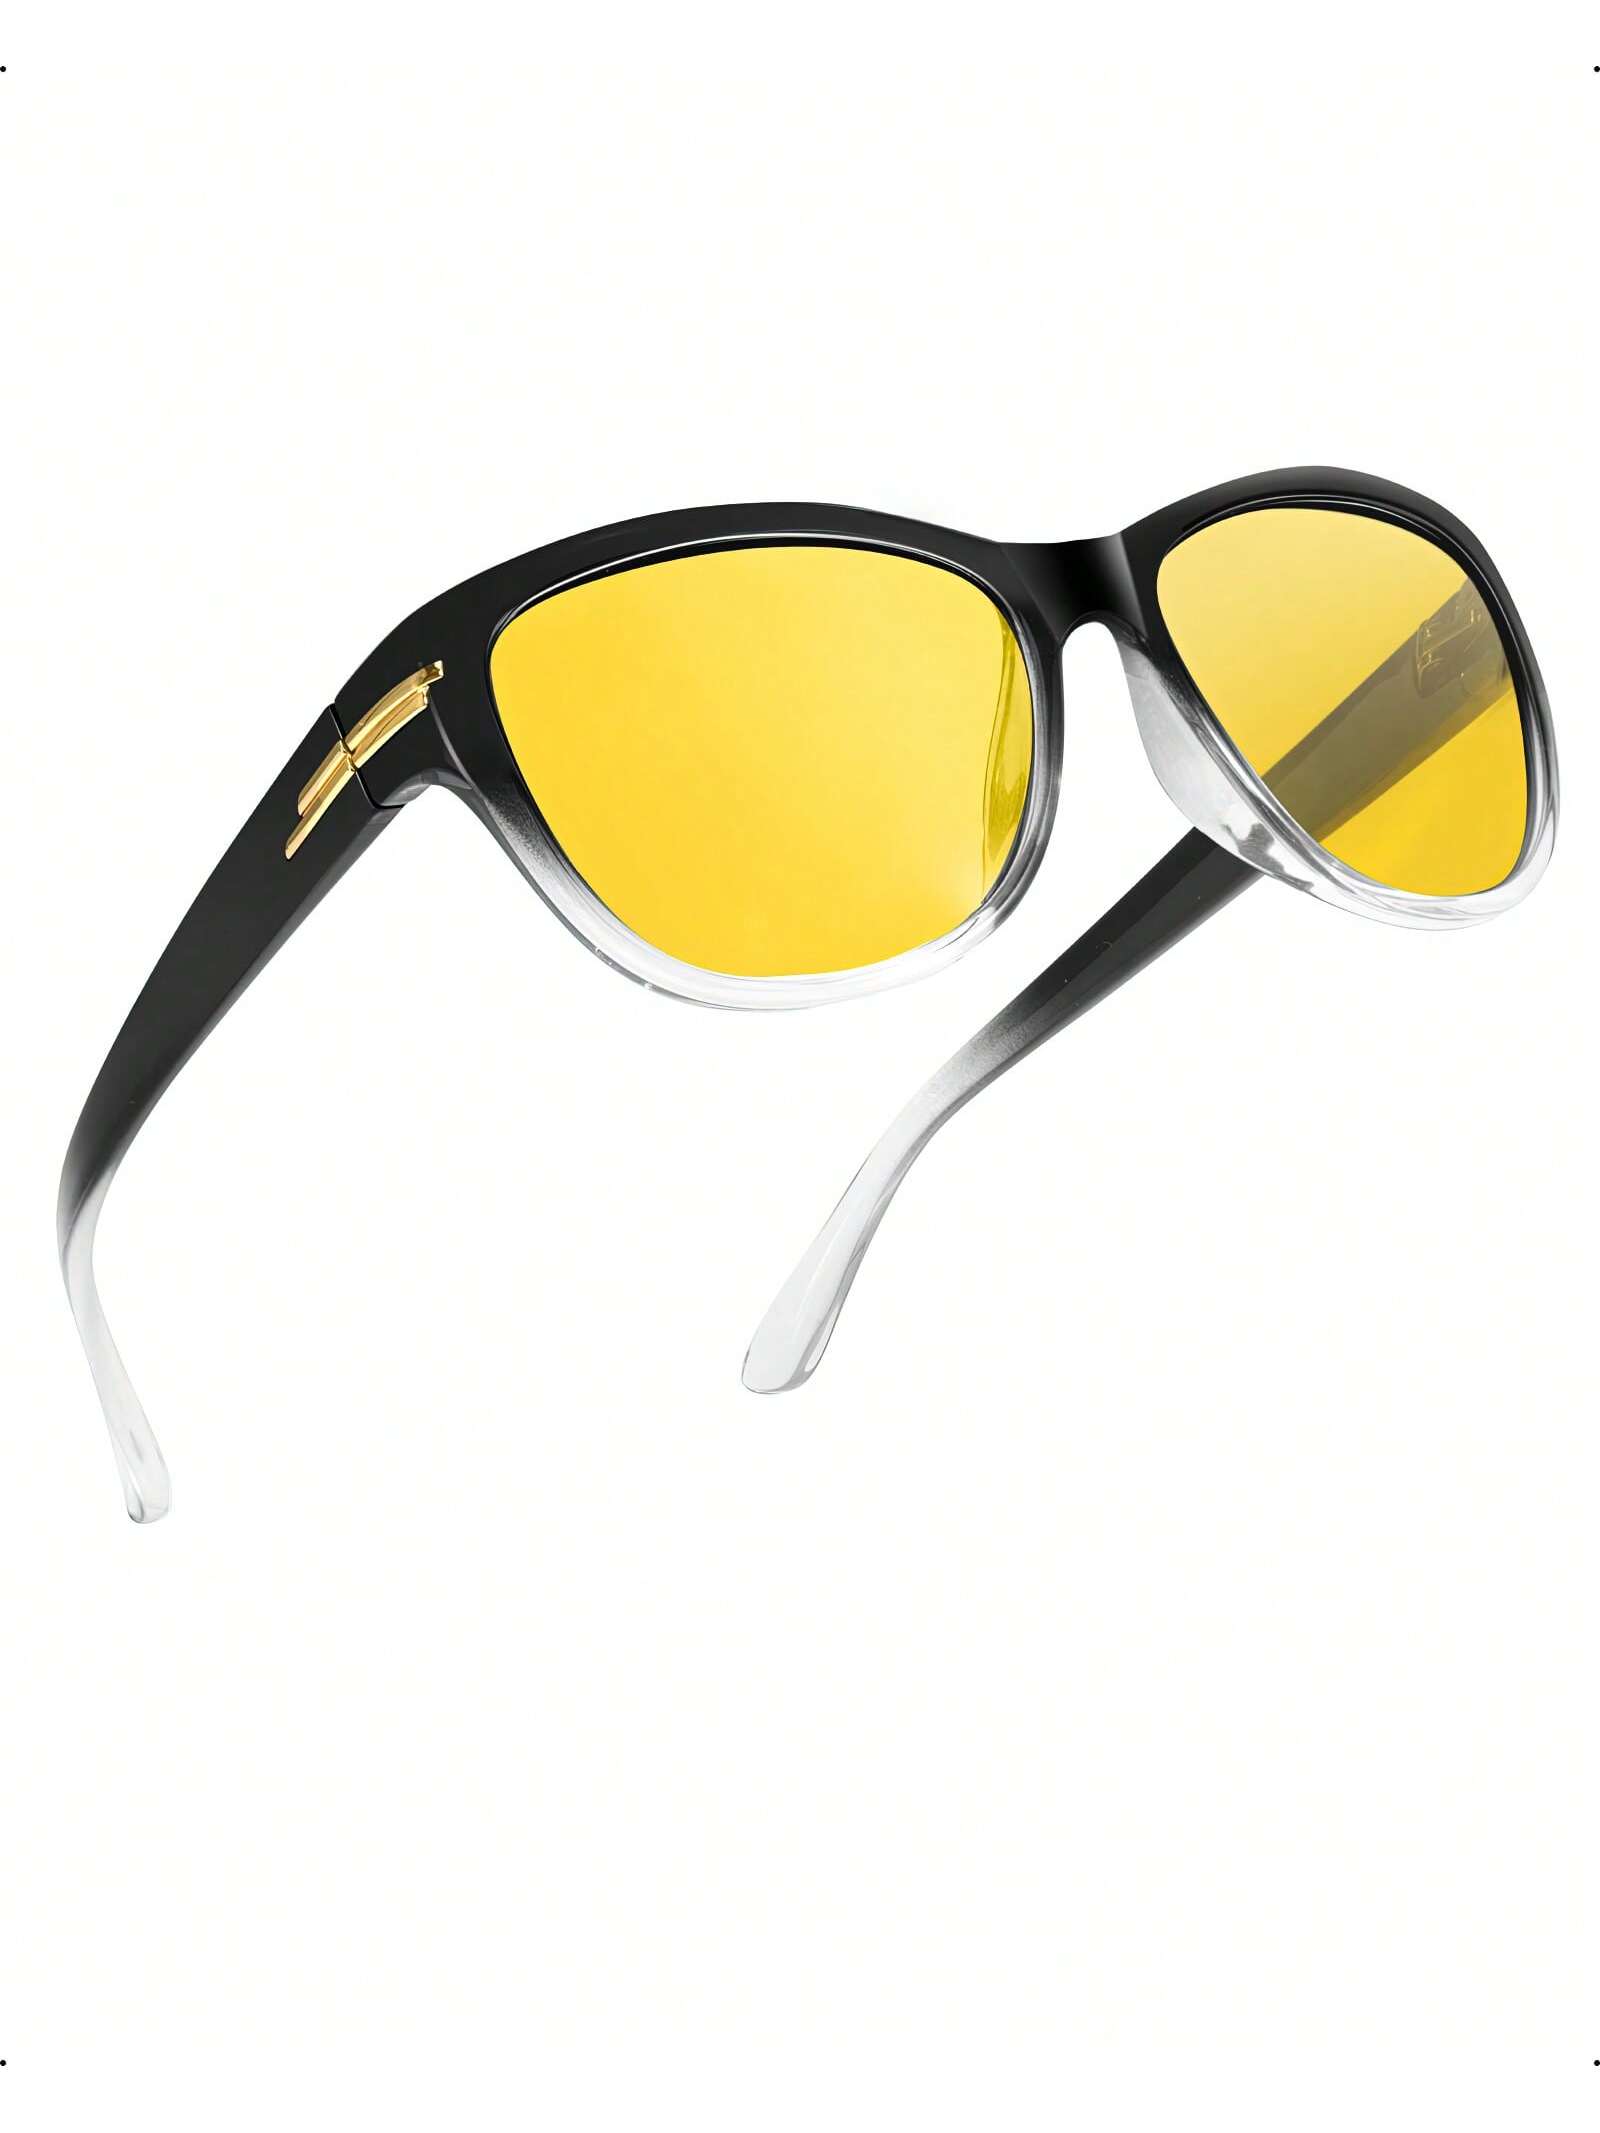 LVIOE 1 пара очков для ночного вождения для женщин и мужчин антибликовые поляризационные желтые очки ночного видения для ночного времени LN2317 фото